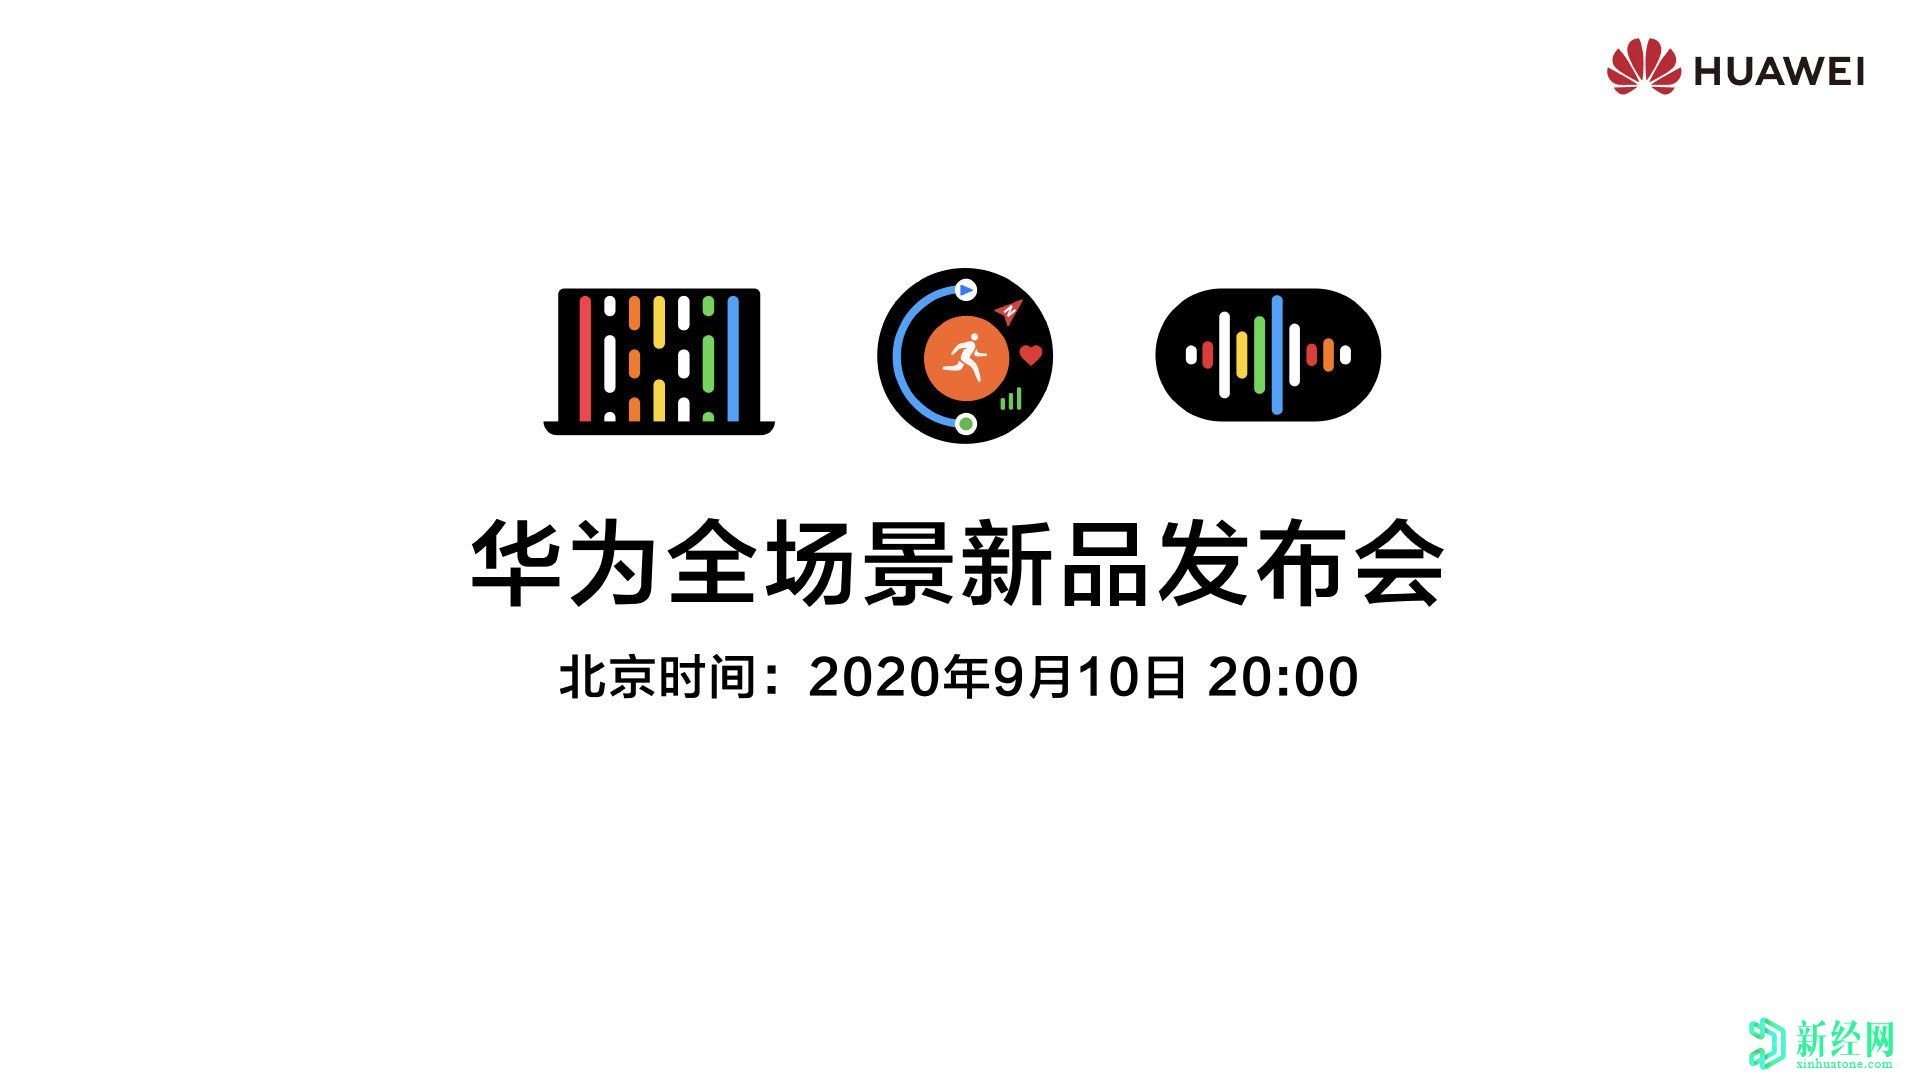 华为定于9月10日举办活动 海报暗示了三种新产品